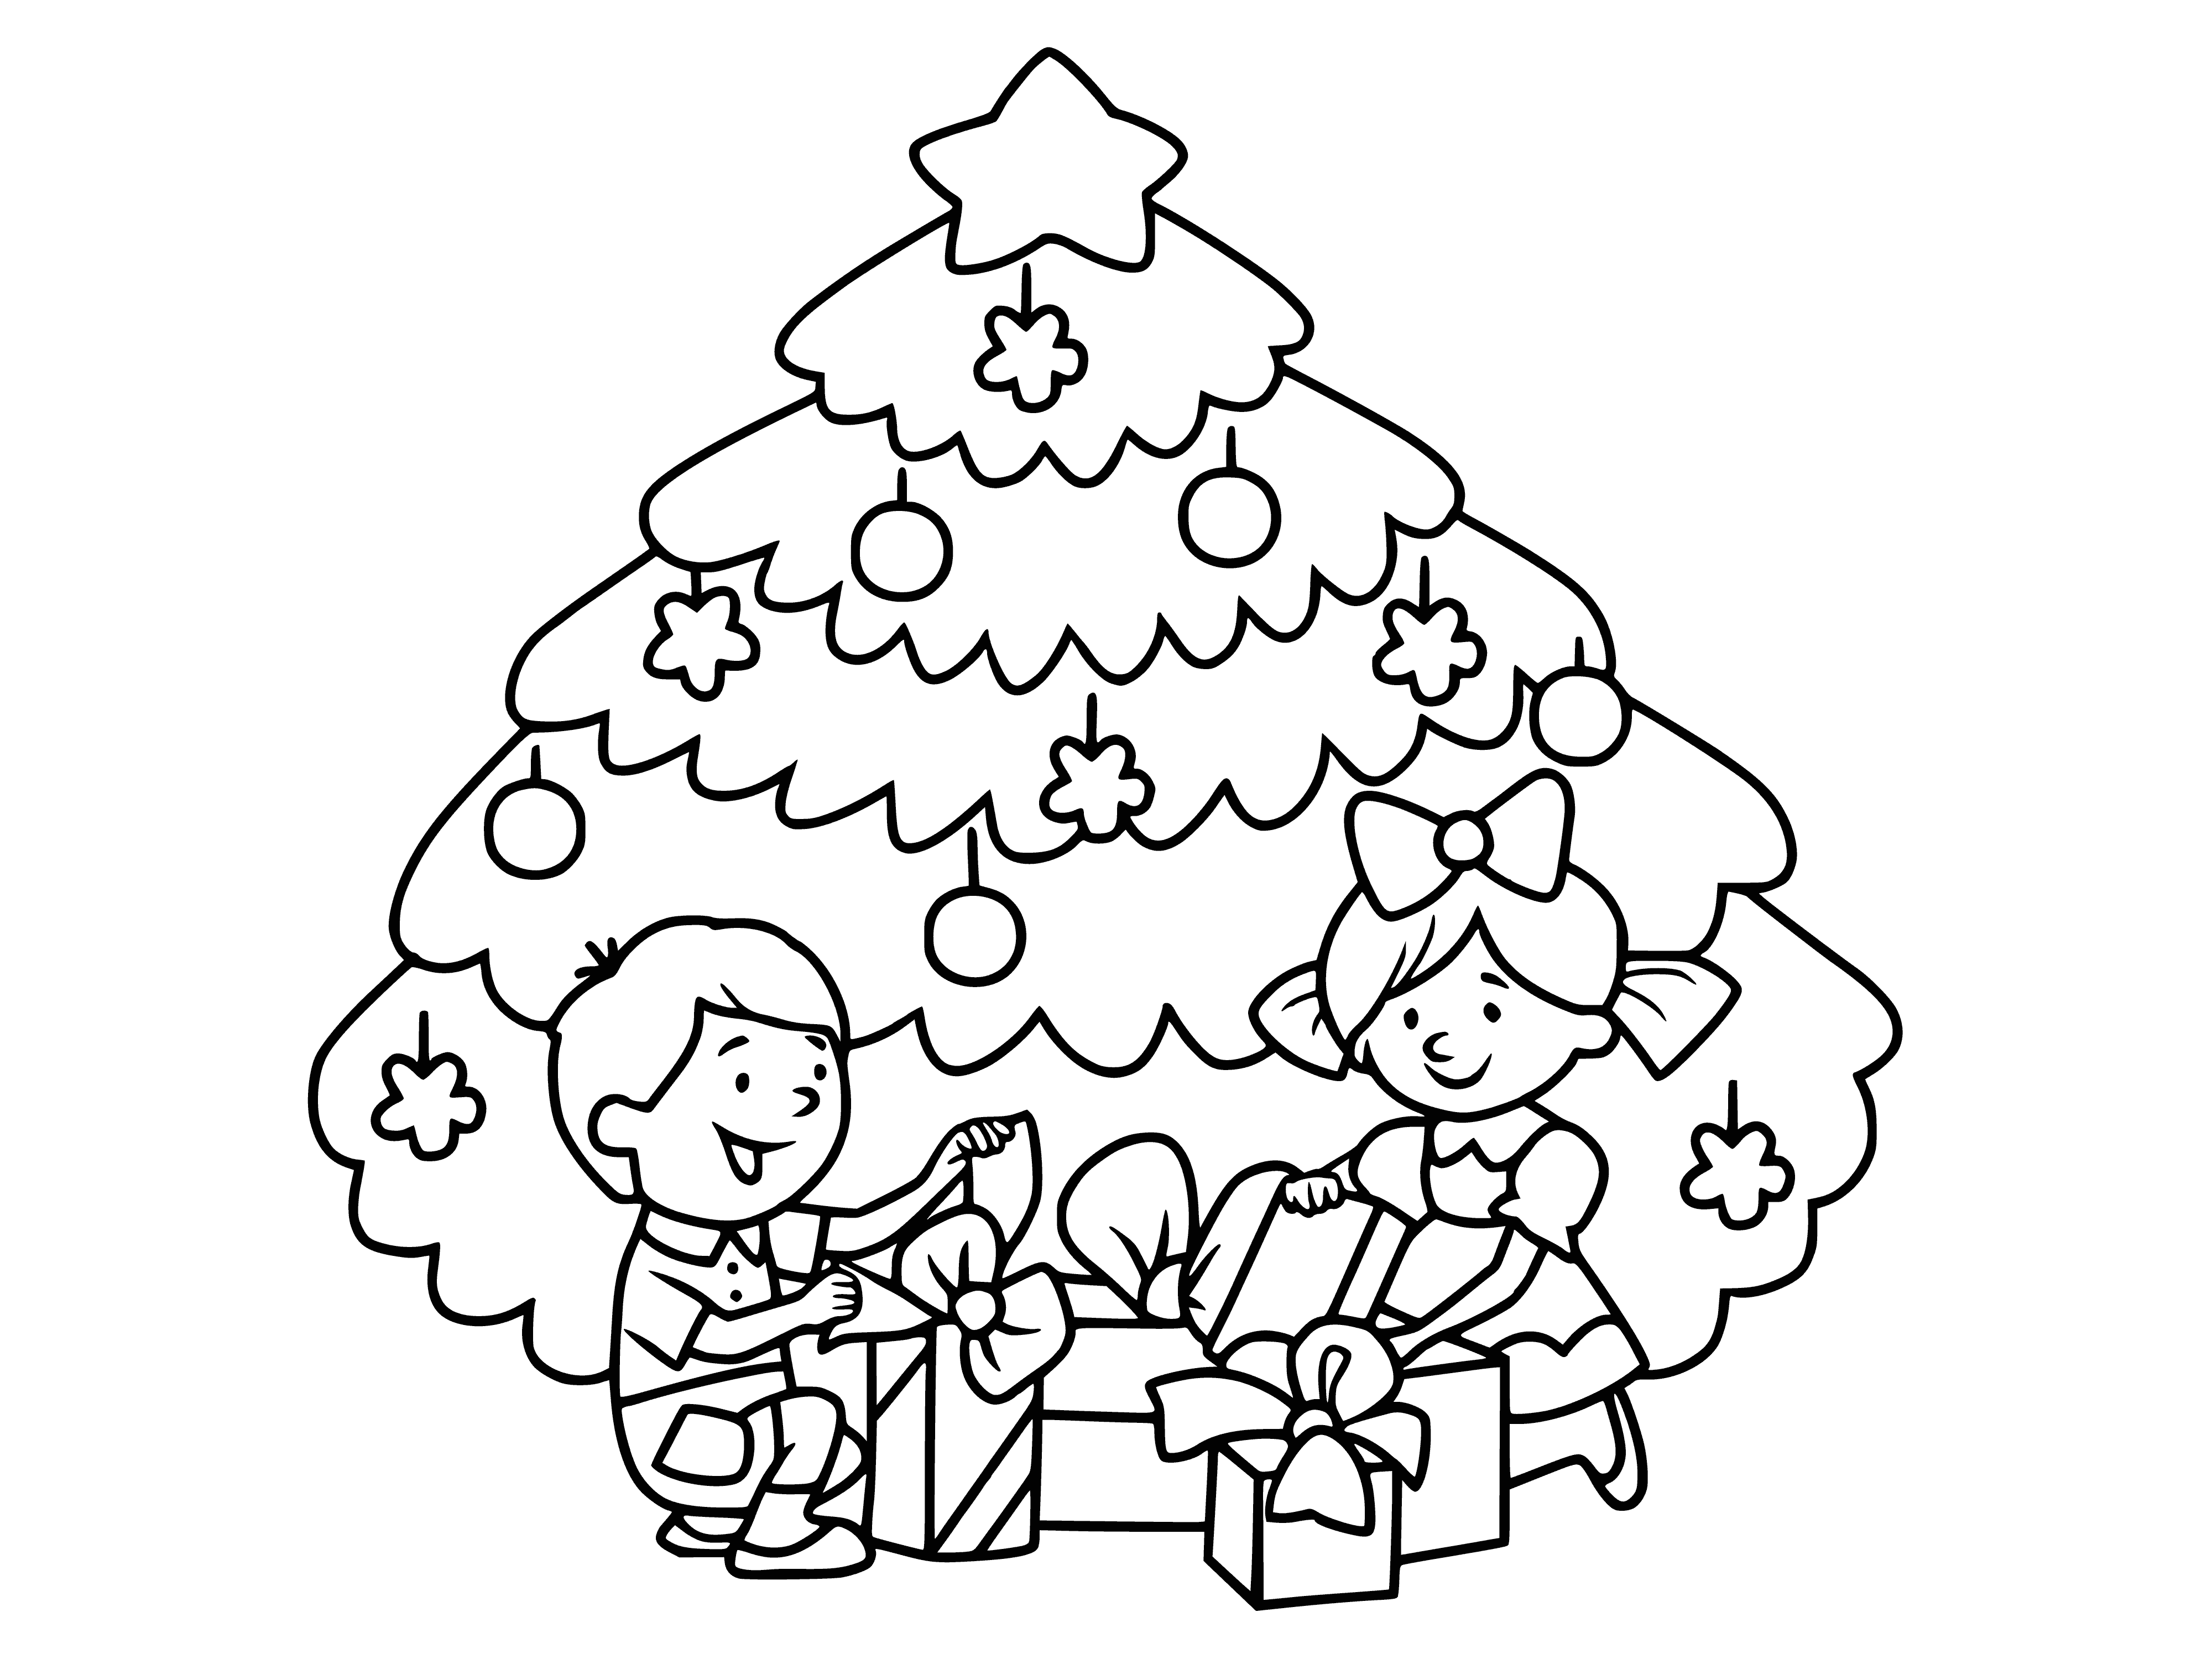 Cadeautjes bij de kerstboom kleurplaat